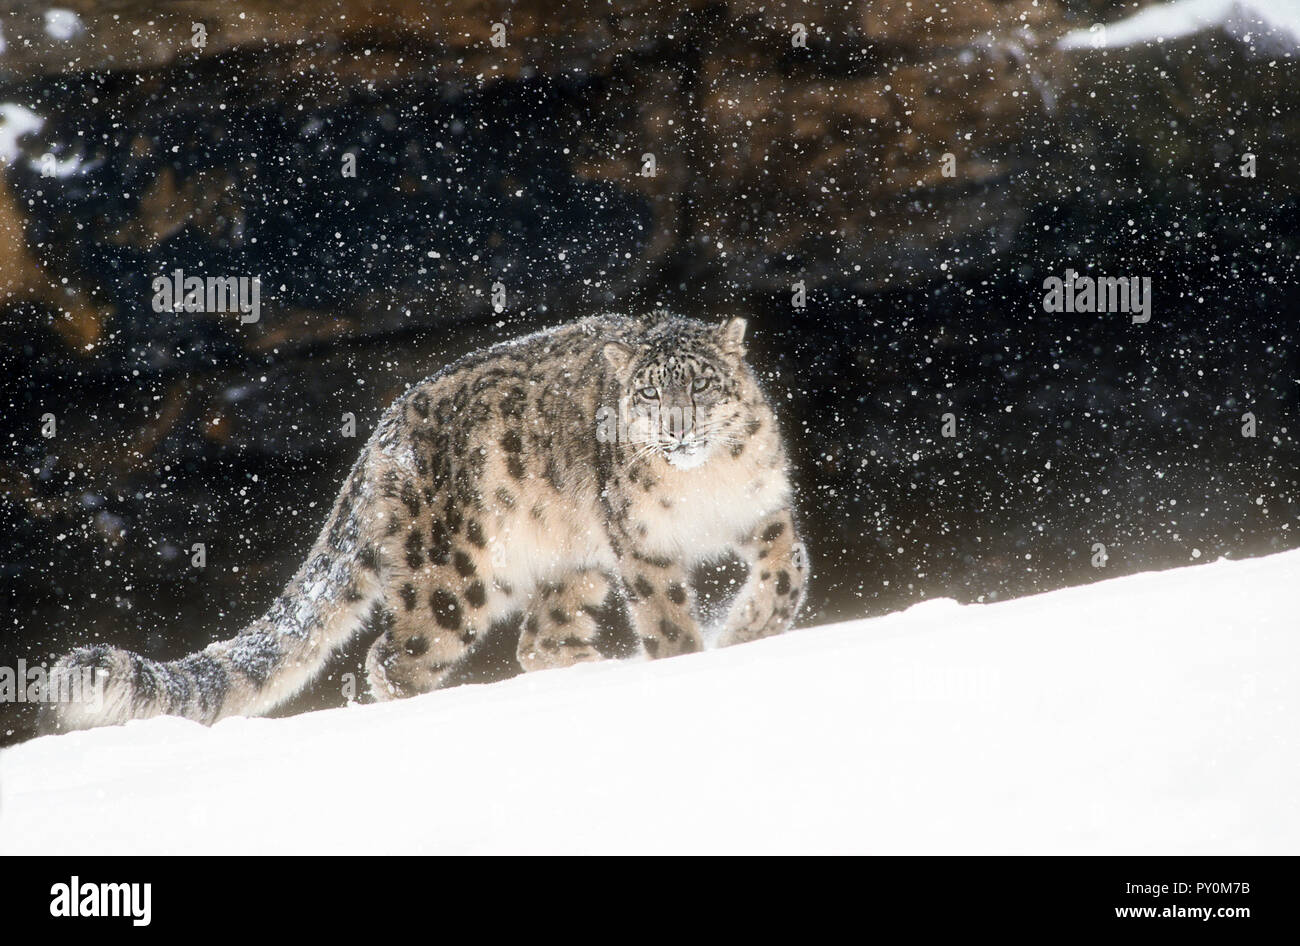 Snow Leopard; Big Cat; Predator; Winter; gefangen. Stockfoto